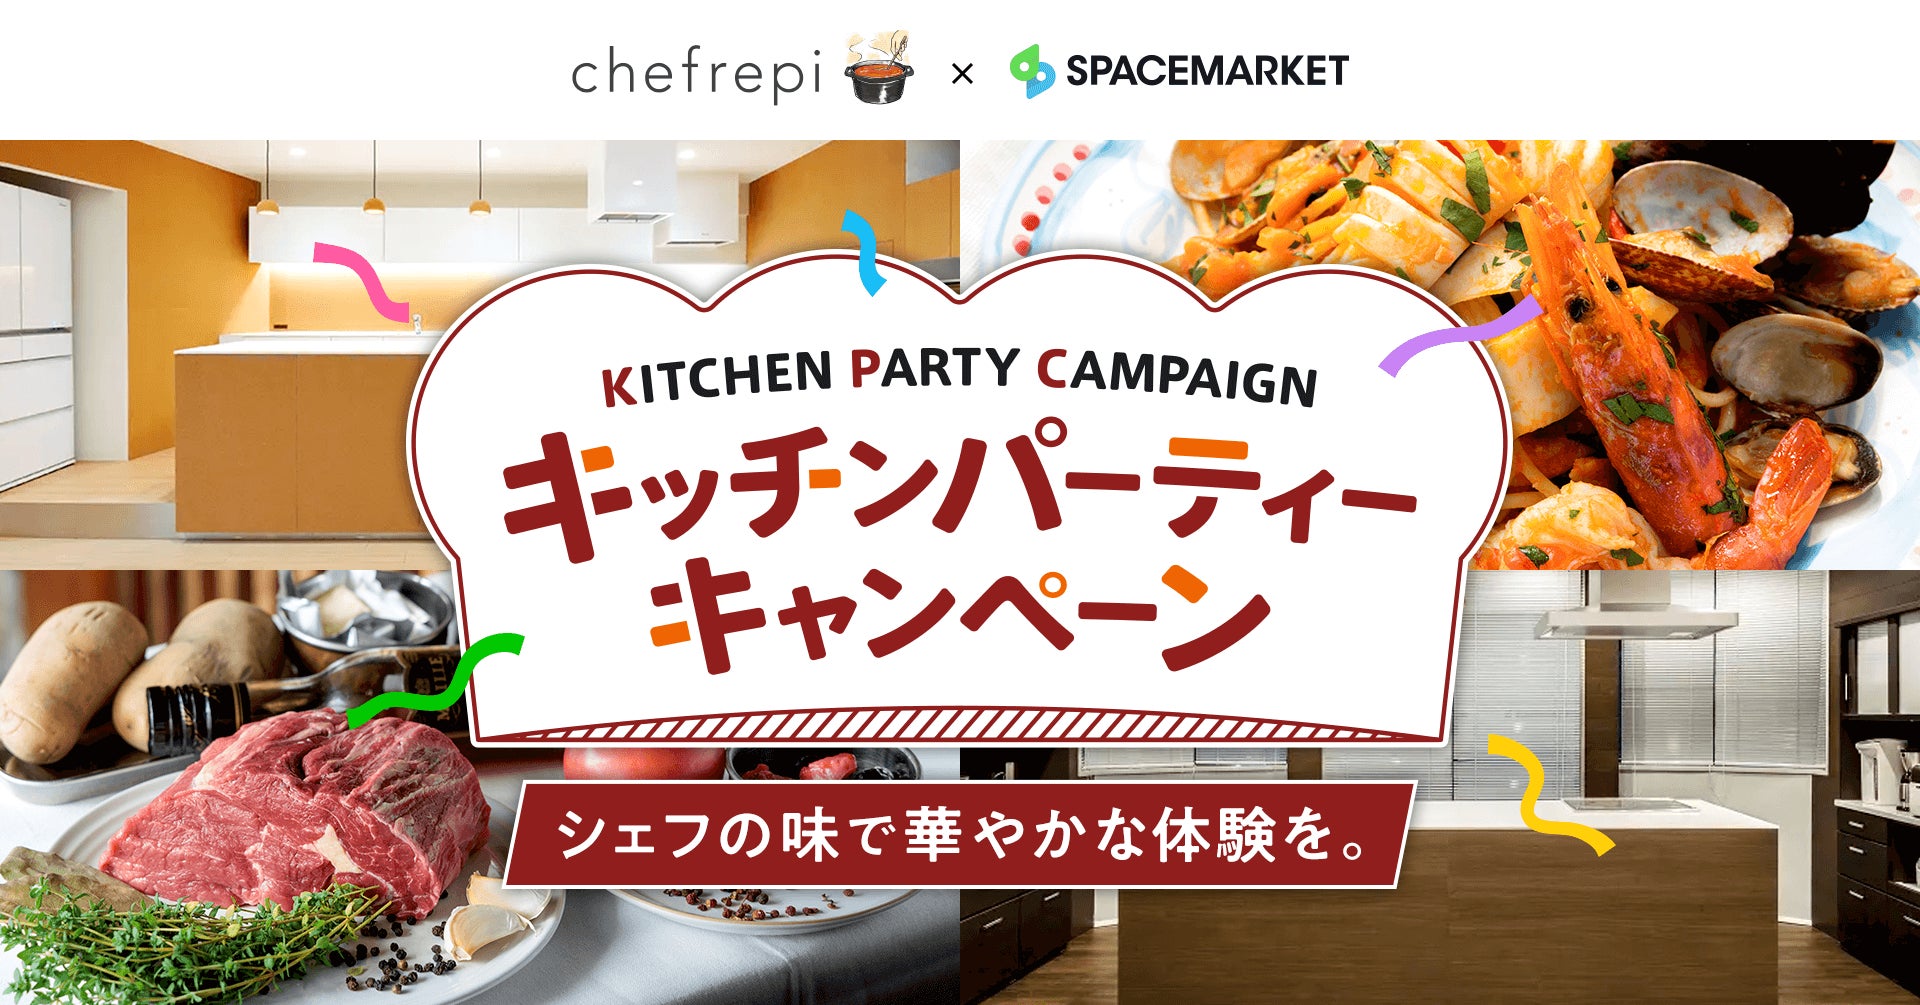 スペースマーケットとシェフレピ、「キッチンパーティーキャンペーン」と題したプレゼント企画を実施。久しぶりの再会を快適な空間で本格的なプロのレシピを作って楽しもう。